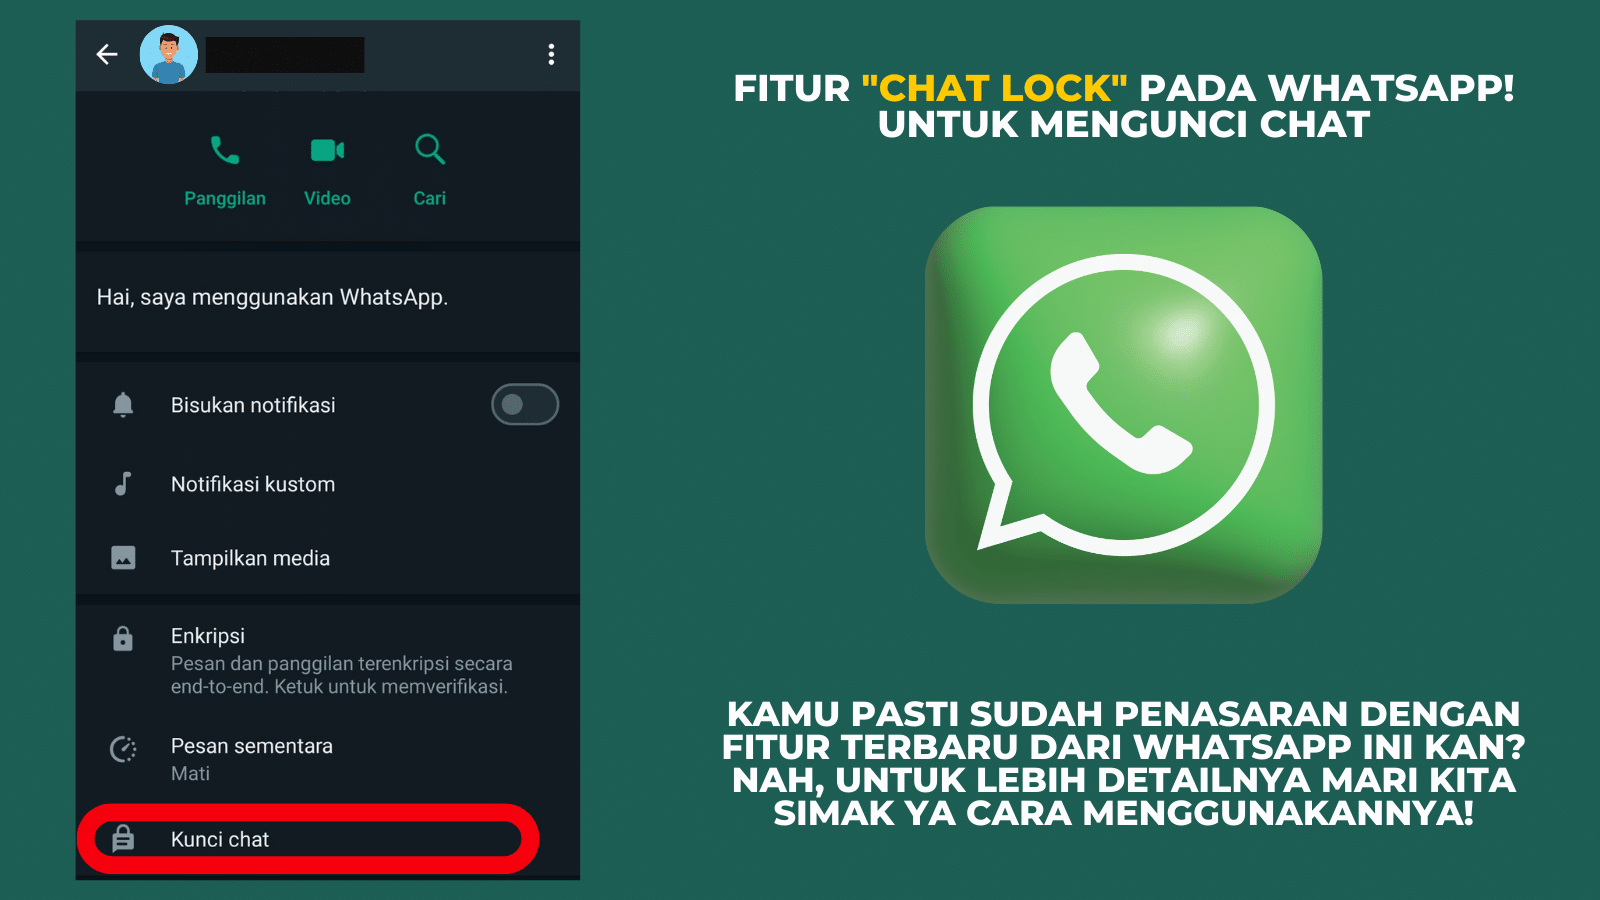 WhatsApp チャット ロック